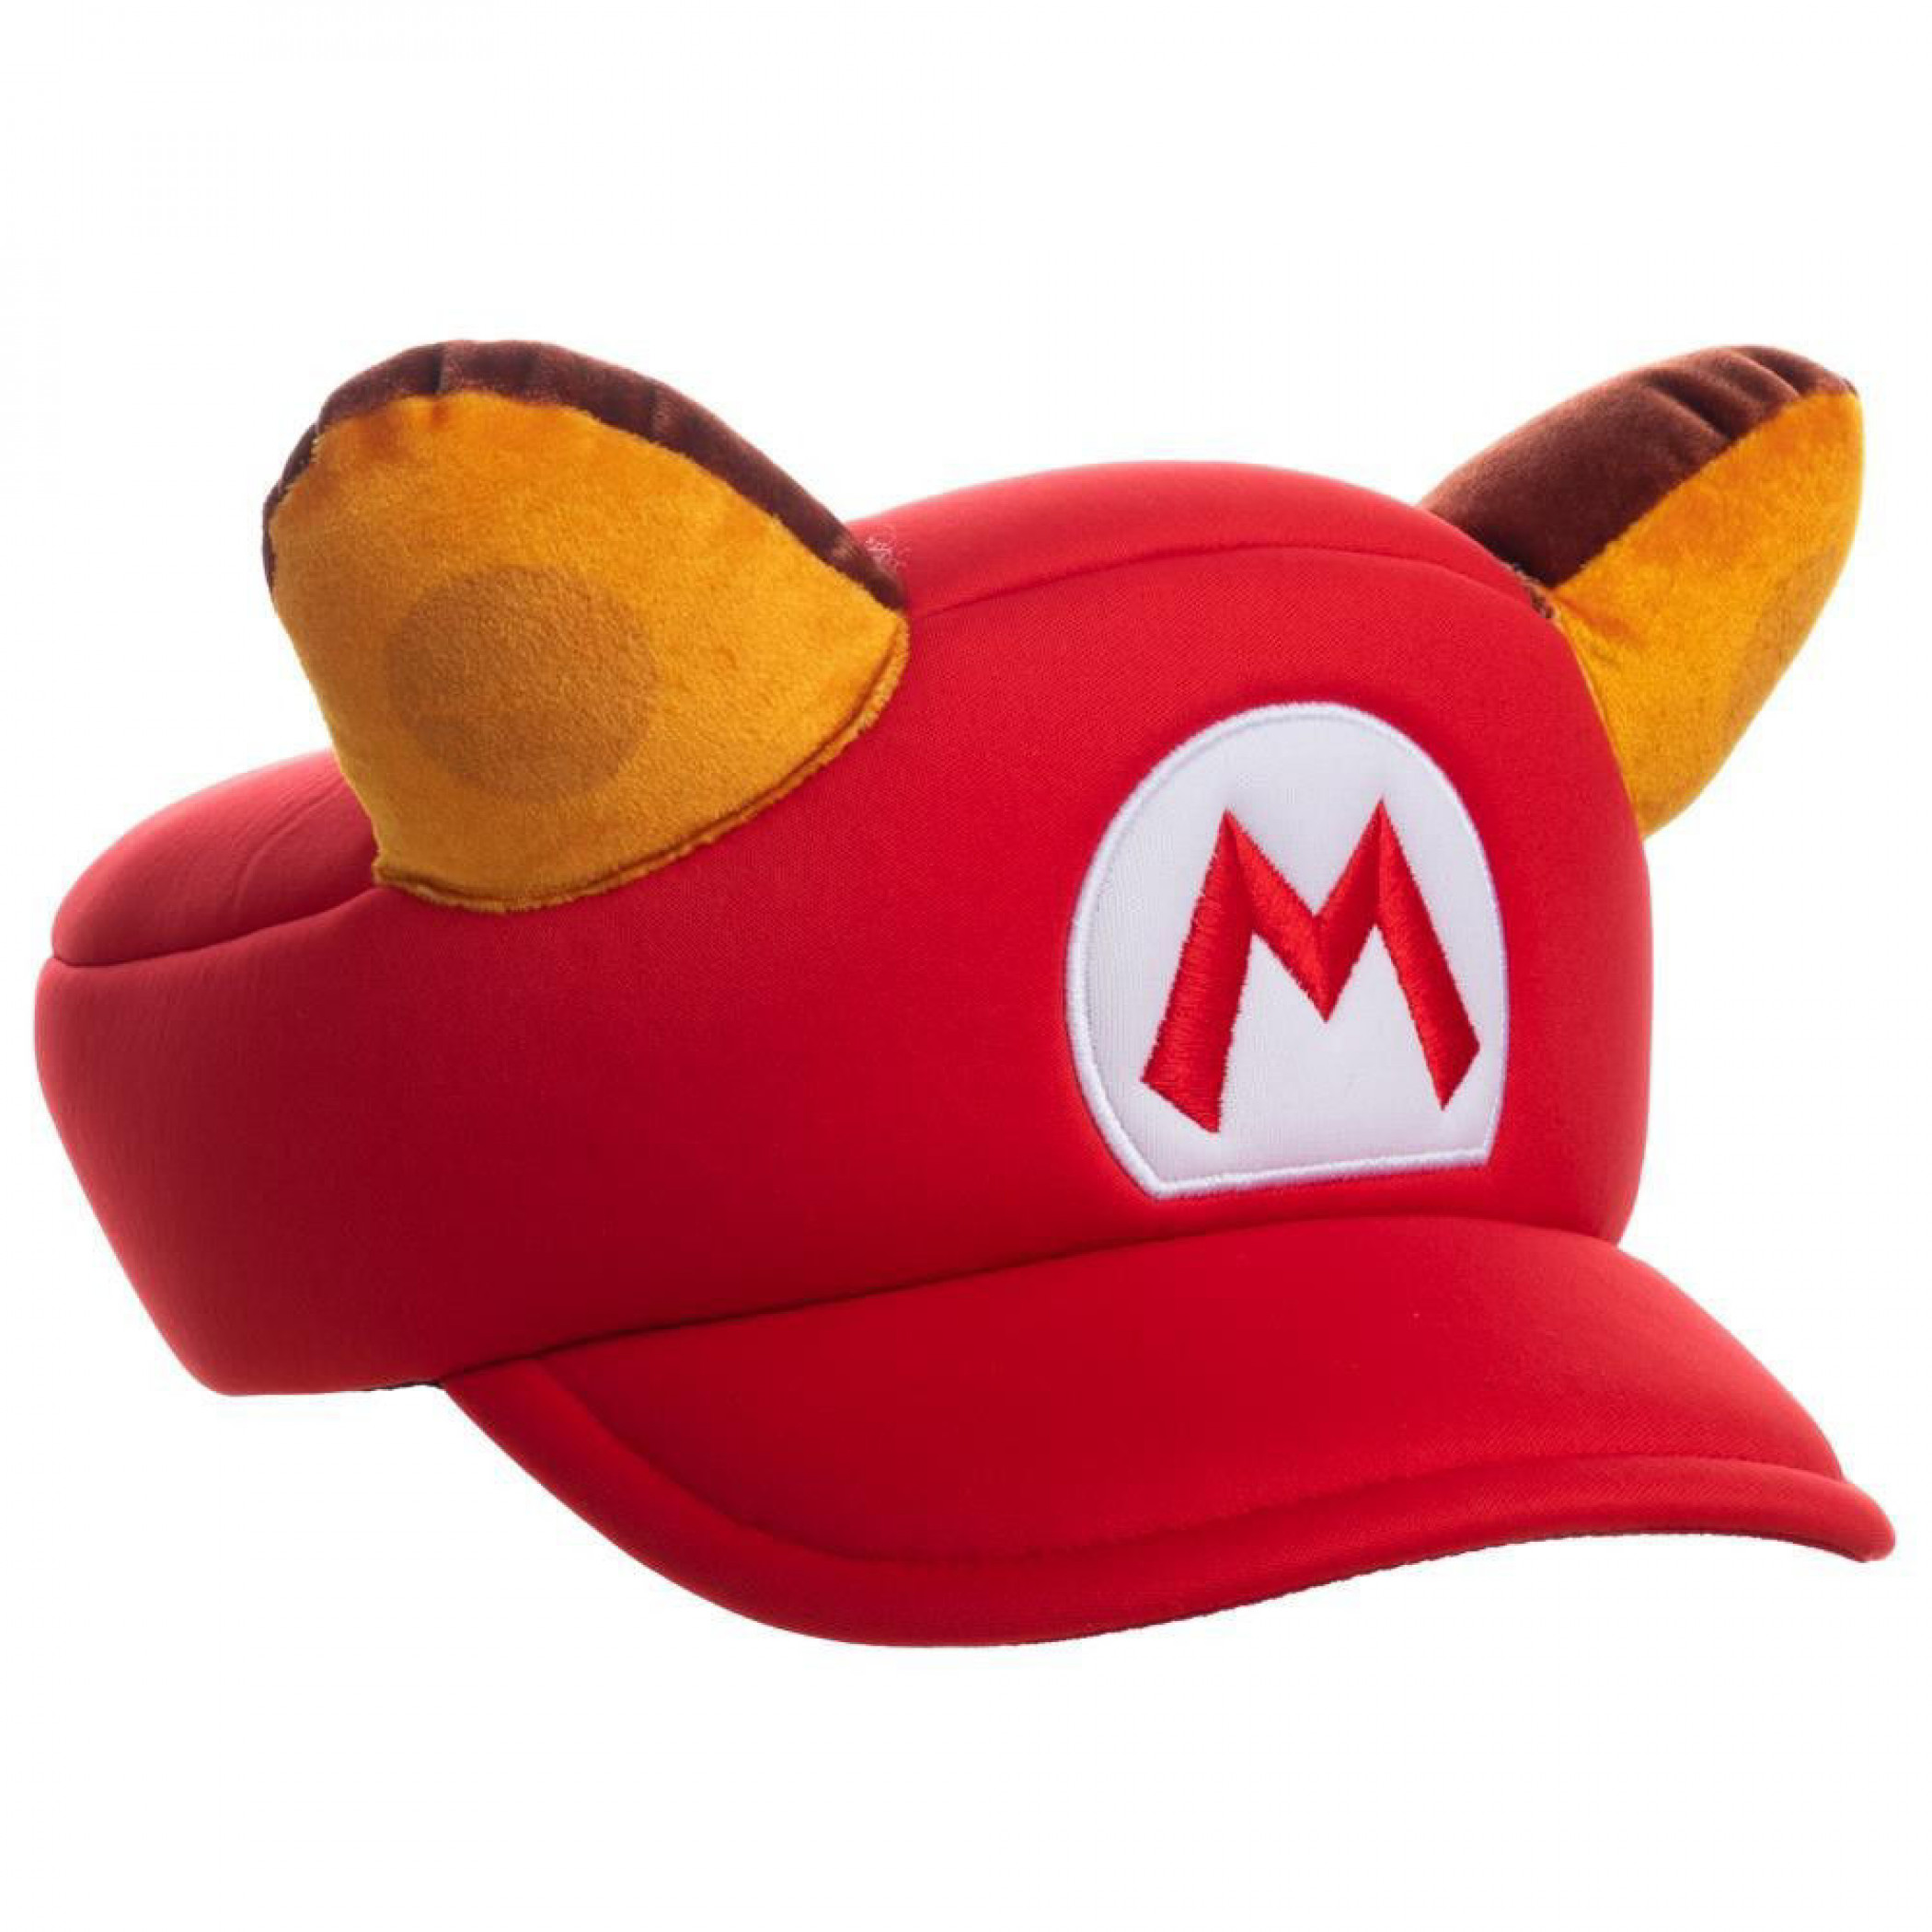 Super Mario Bros. 3 Raccoon Mario Cosplay Hat